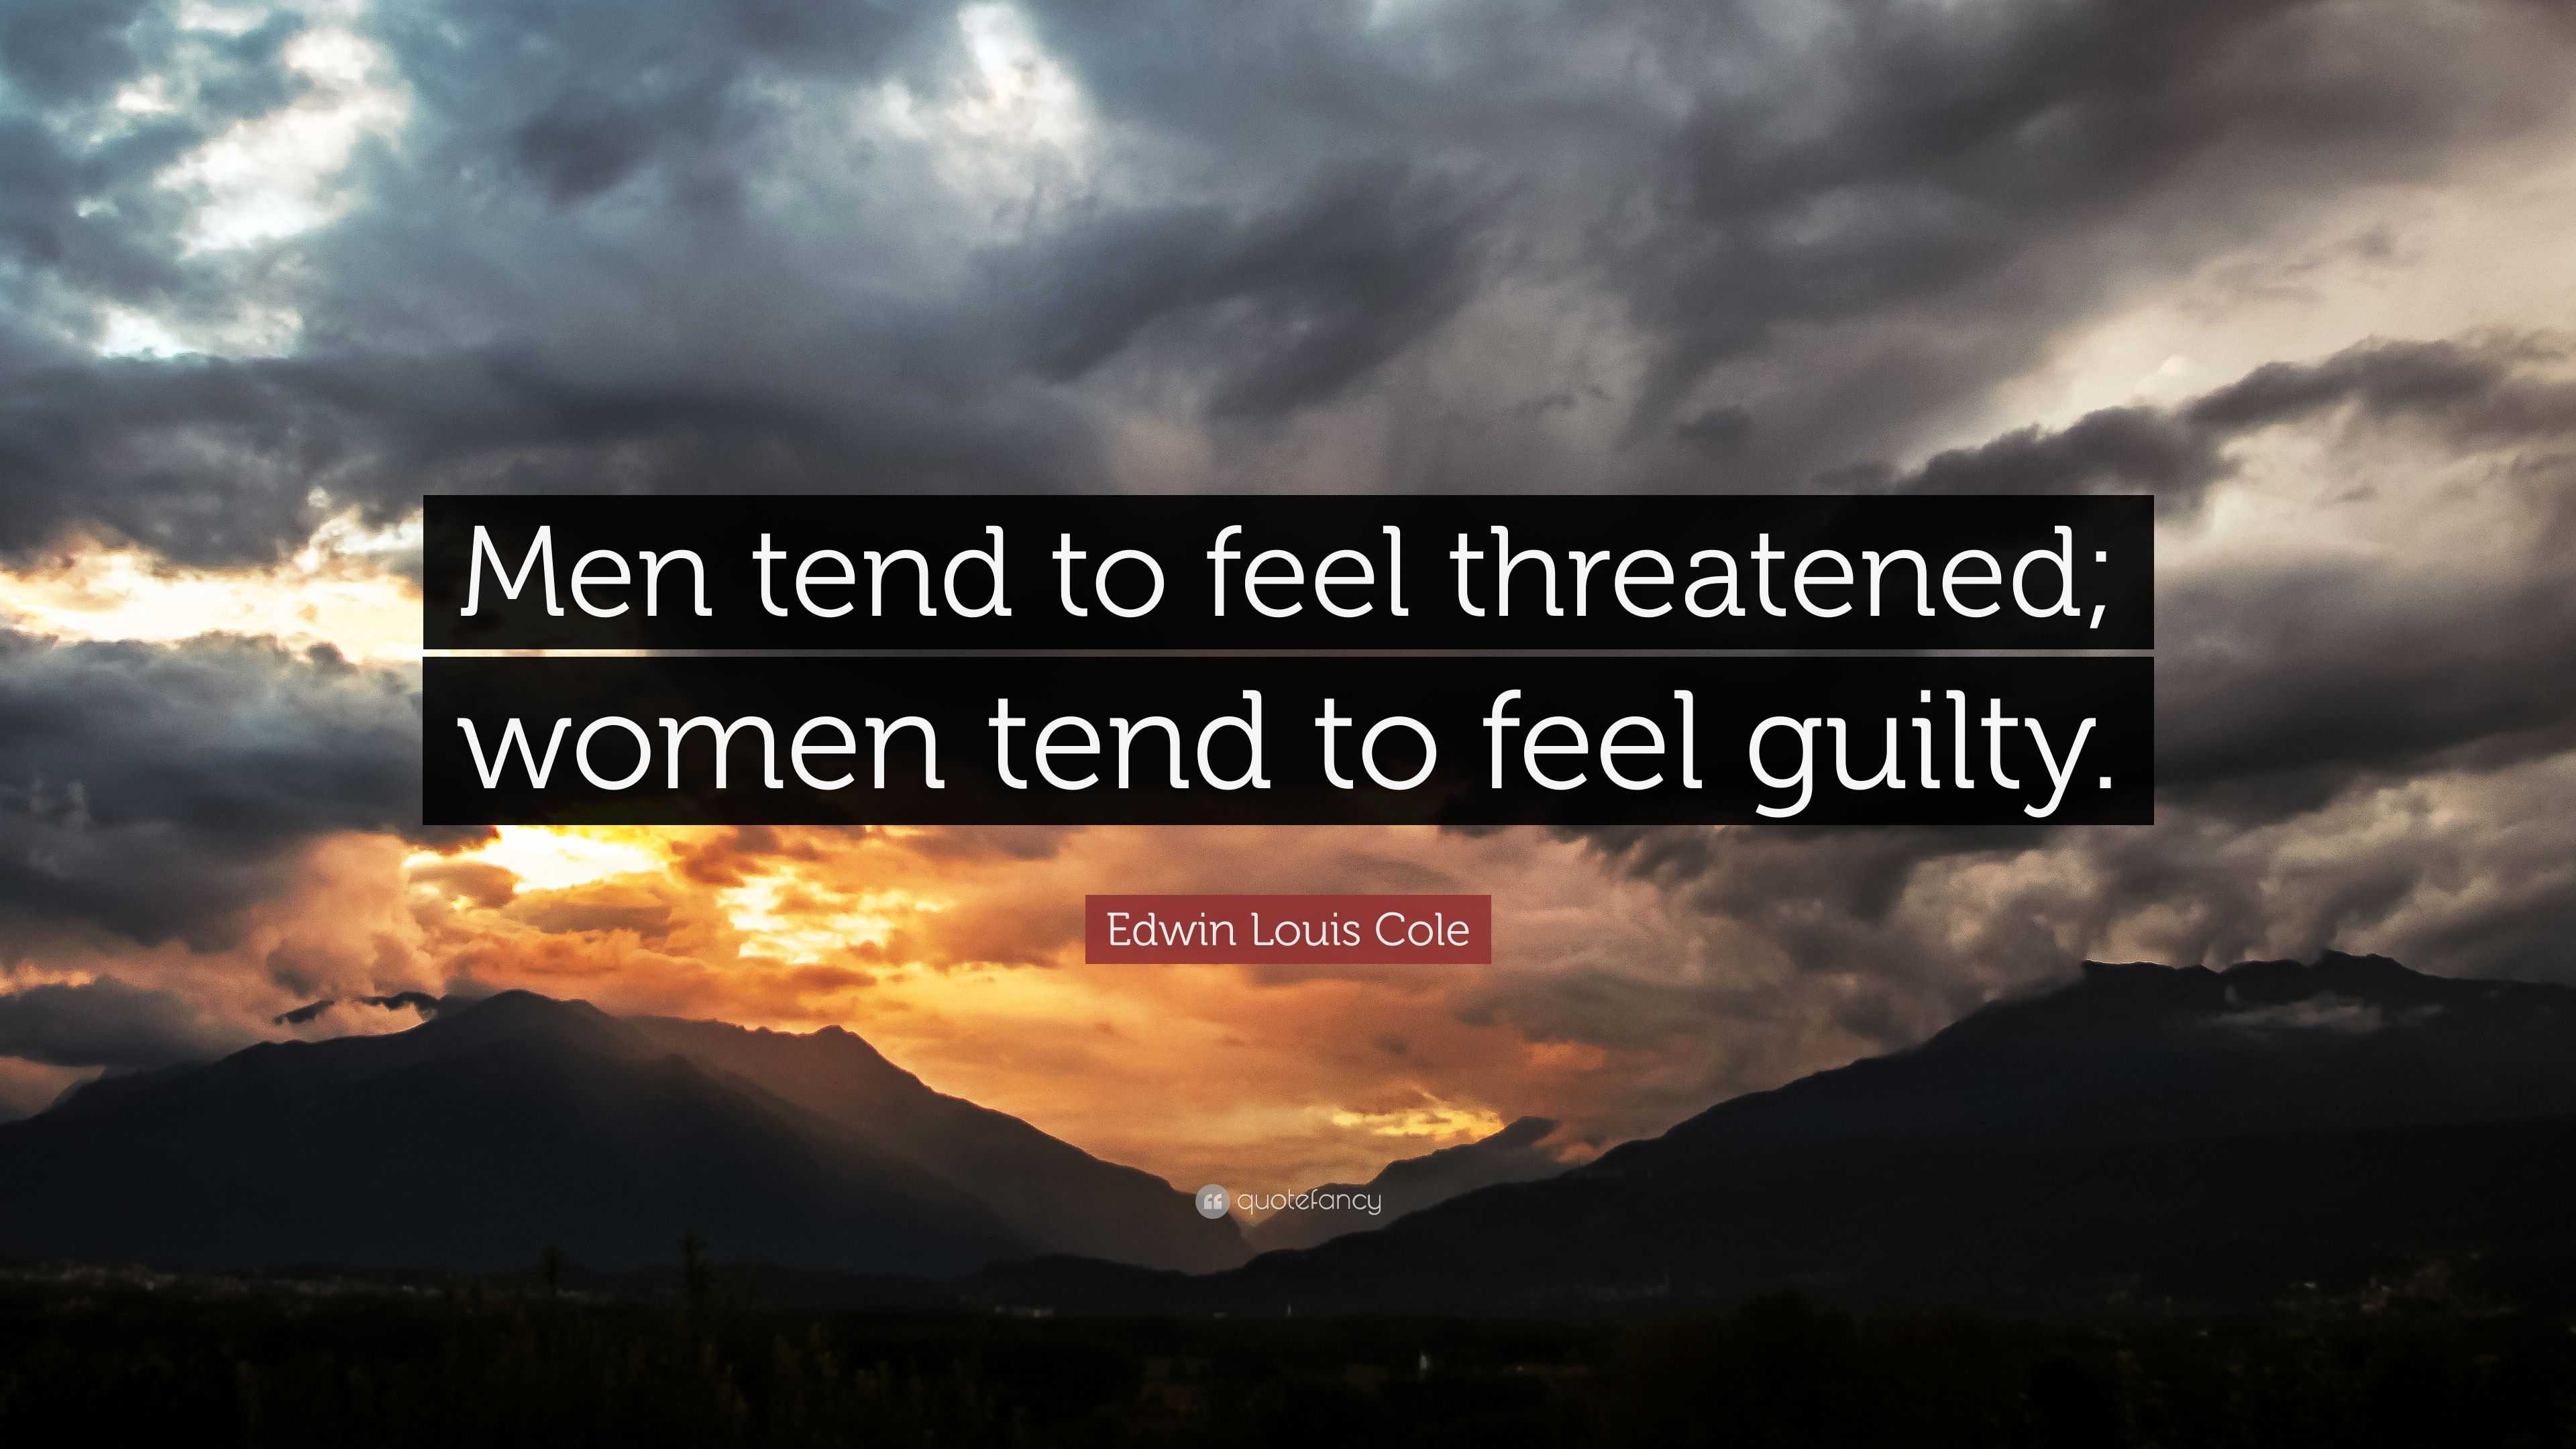 Edwin Louis Cole - Men tend to feel threatened; women tend